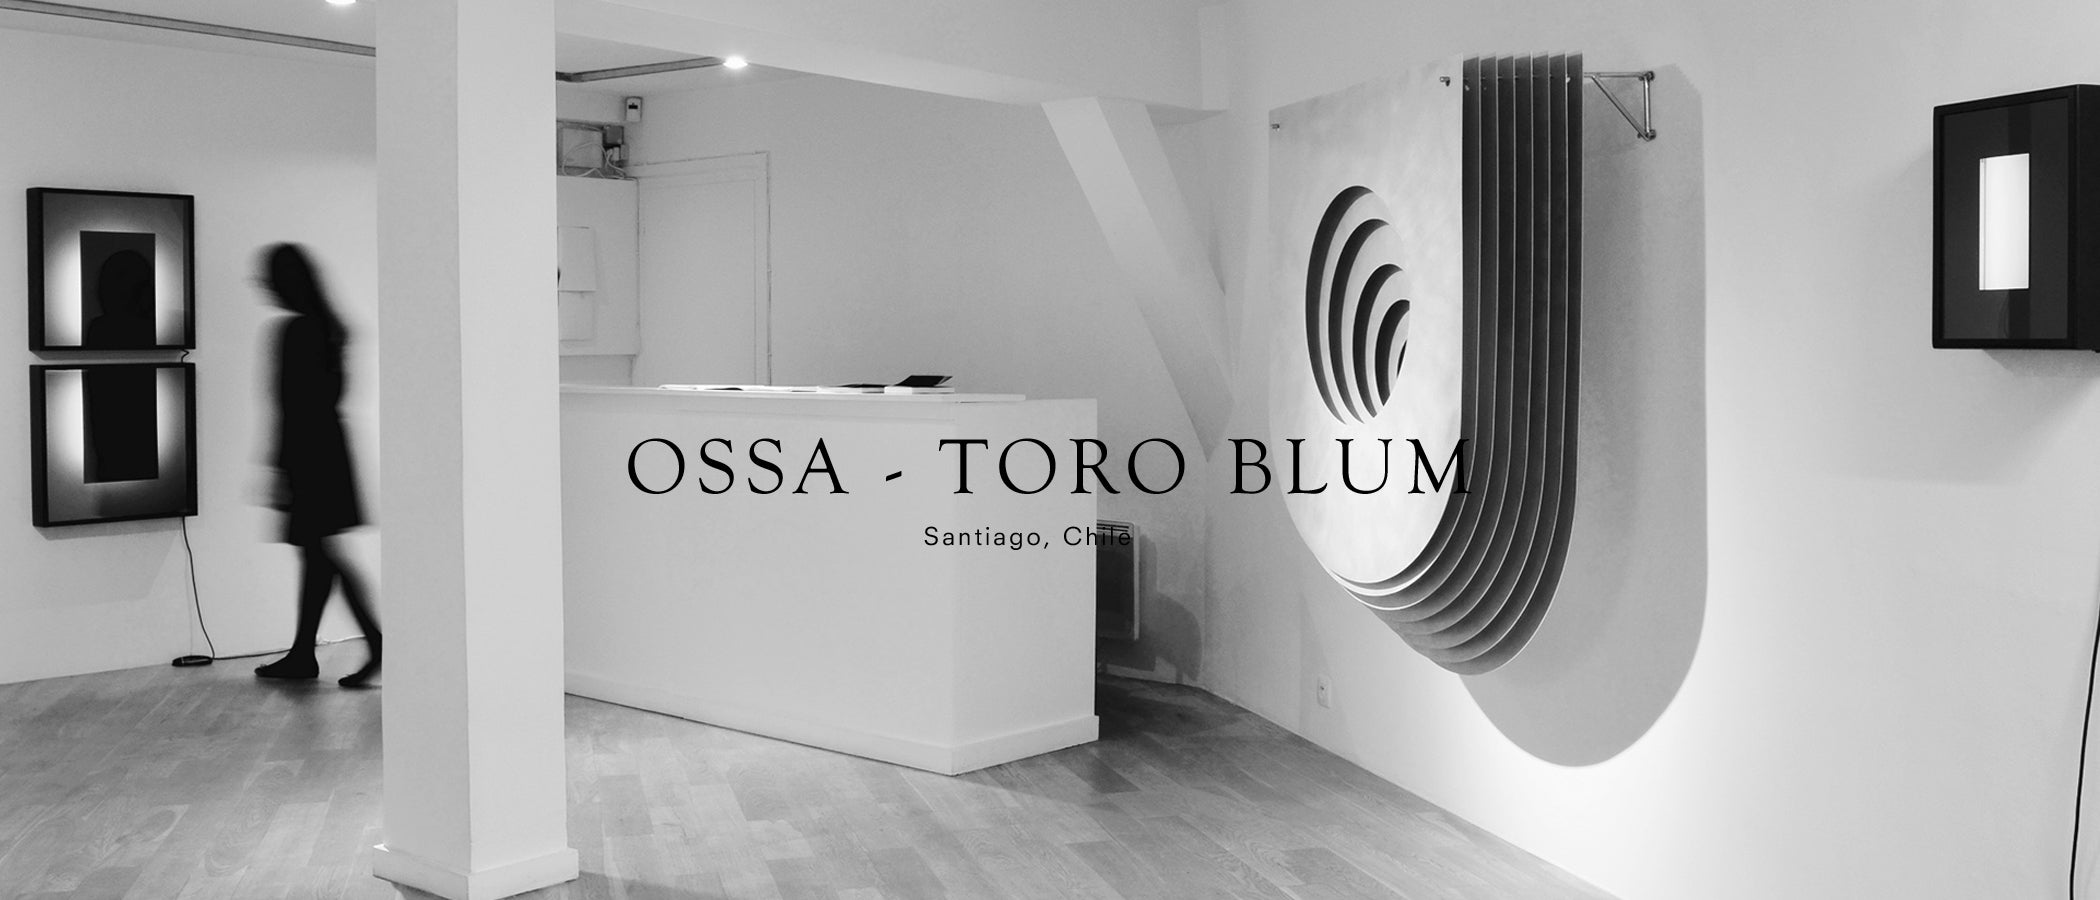 Ossa - Toro Blum